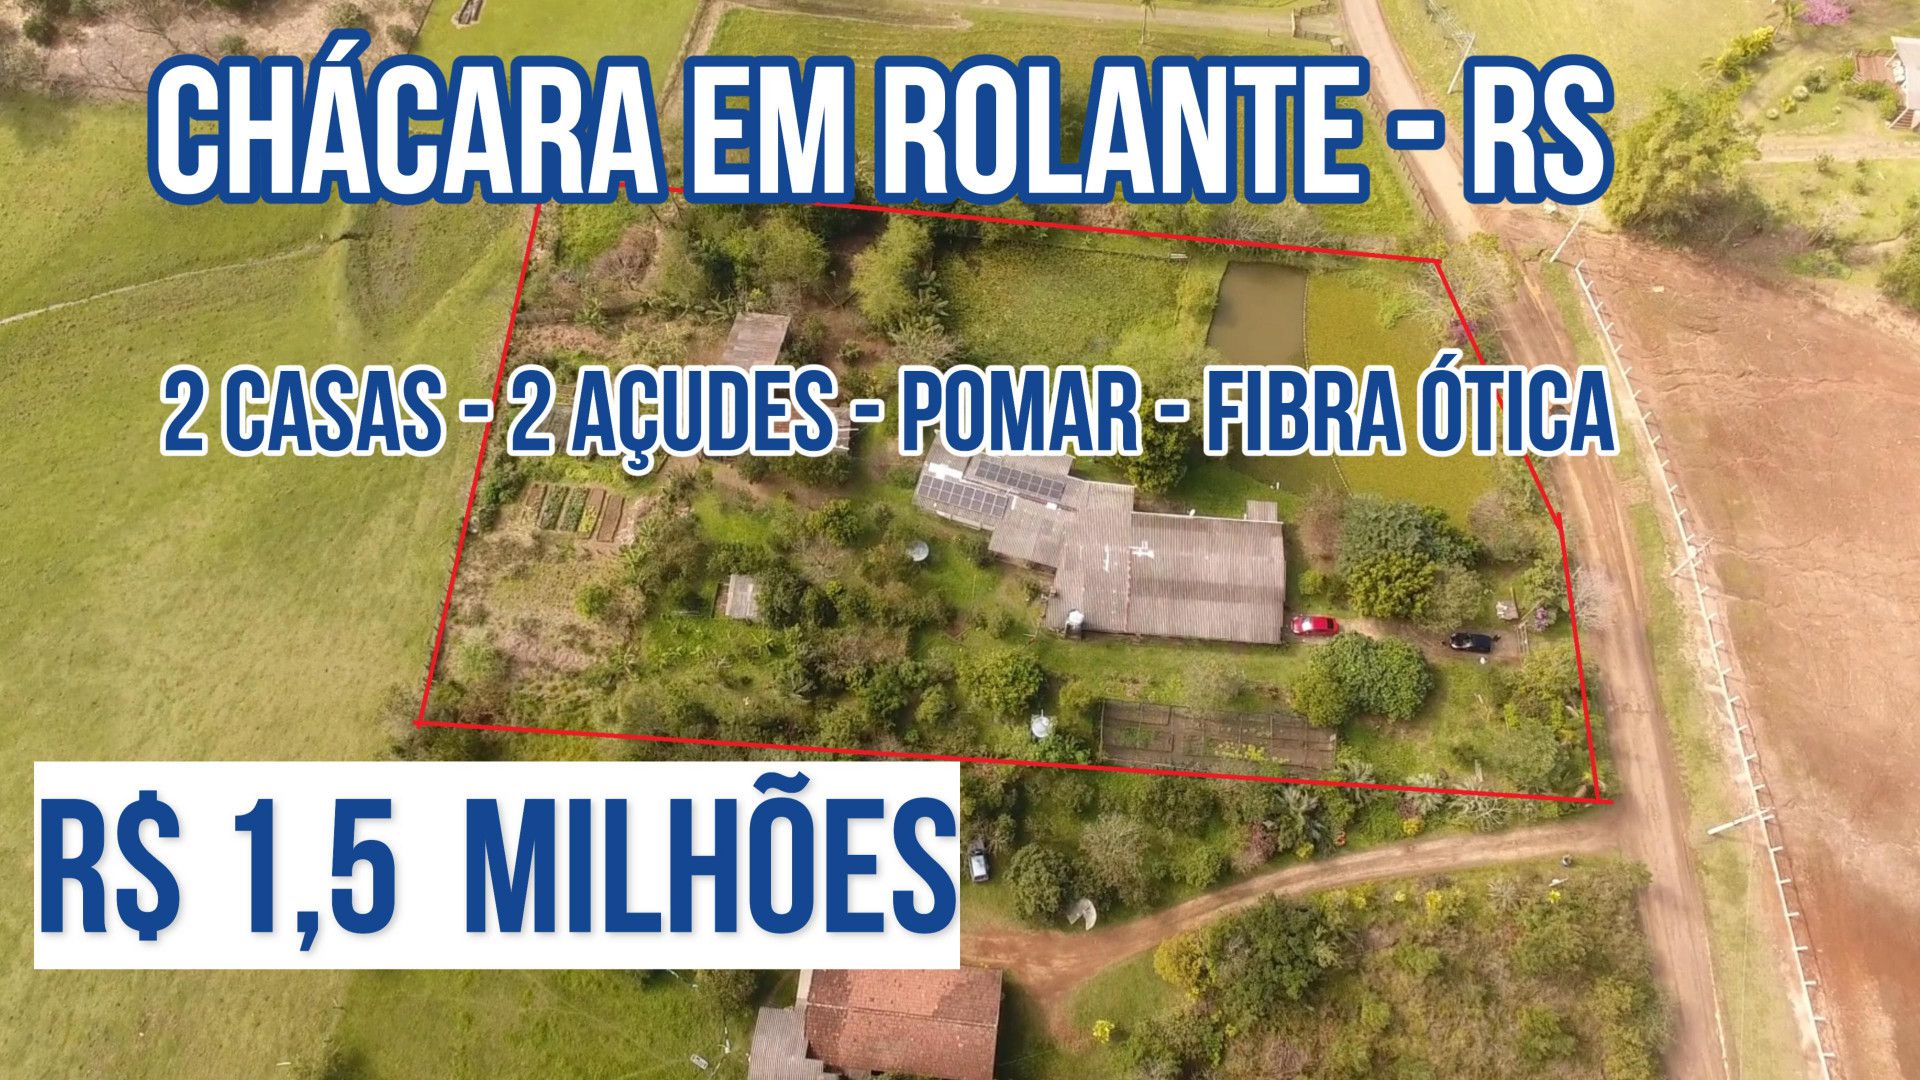 Chácara de 6.300 m² em Rolante, RS